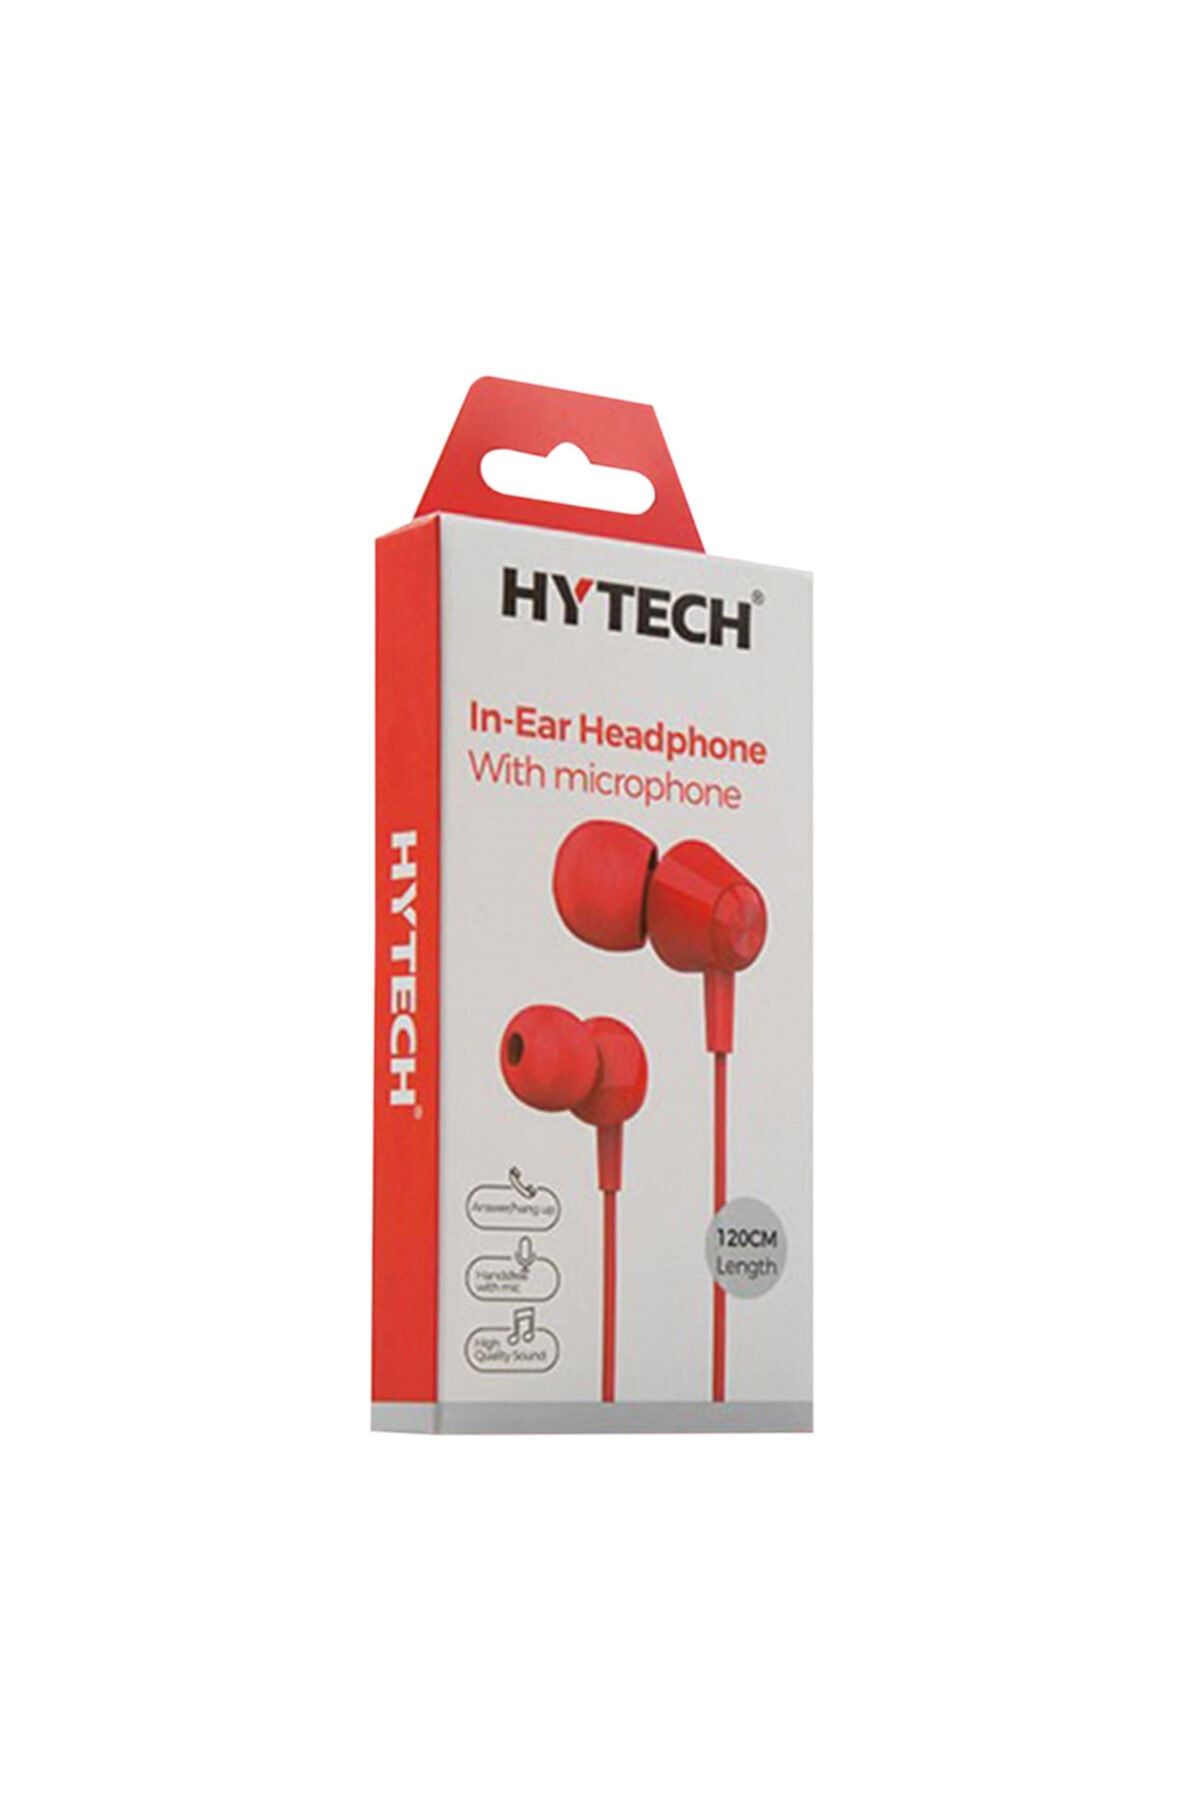 Hytech Hy-xk30 Mobil Telefon Uyumlu Kırmızı Kulaklık